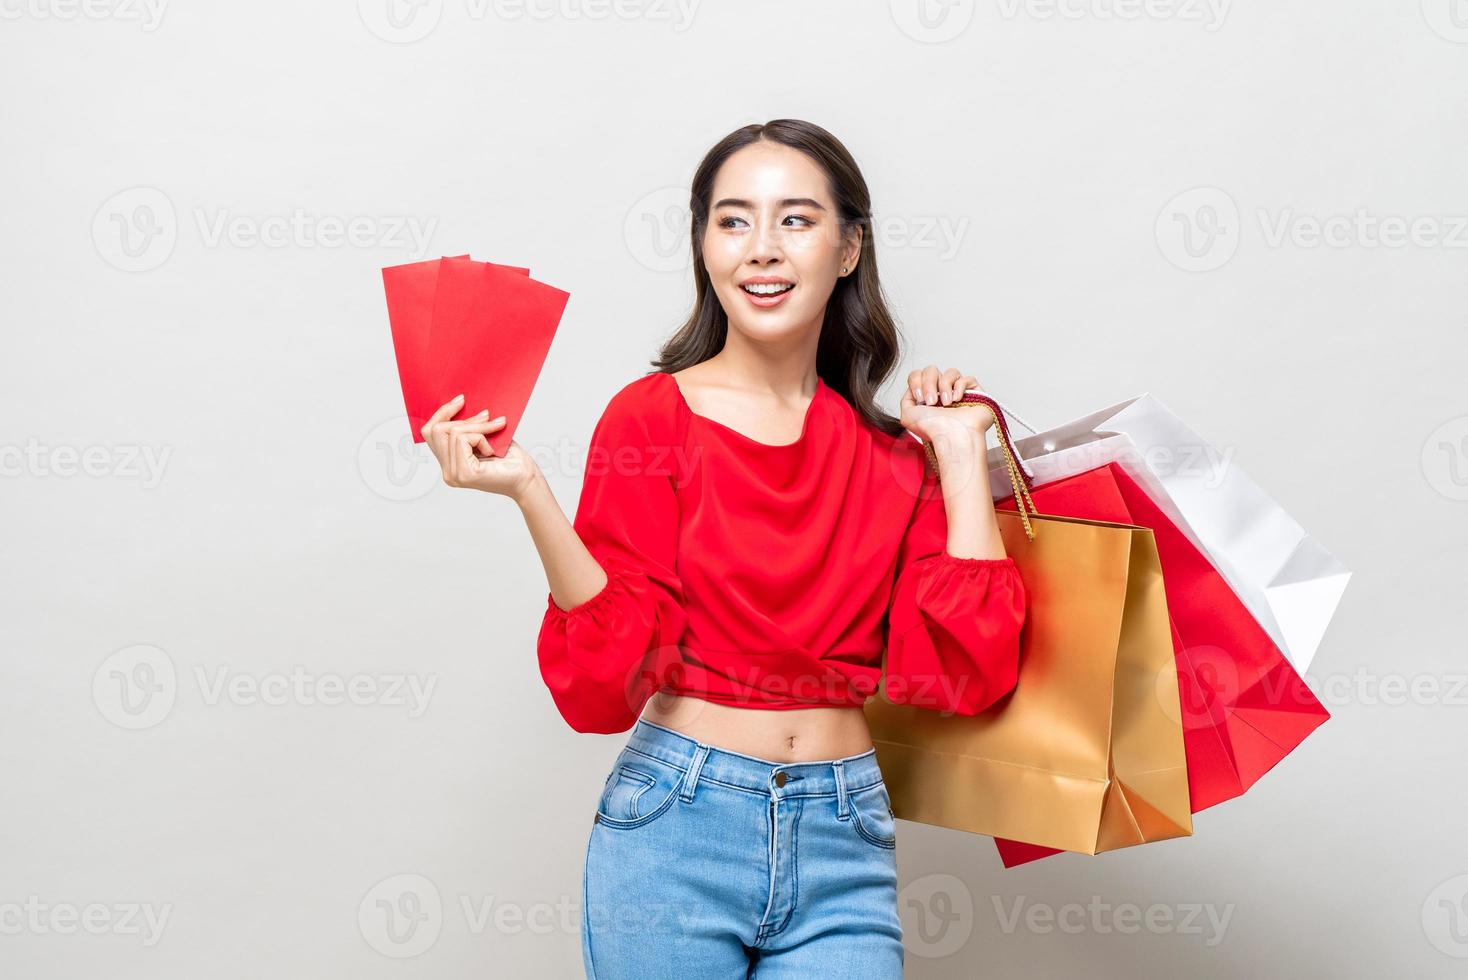 Gelukkige Aziatische vrouw met boodschappentassen en rode enveloppen geïsoleerd in grijze studio achtergrond voor Chinees Nieuwjaar verkoop concept foto